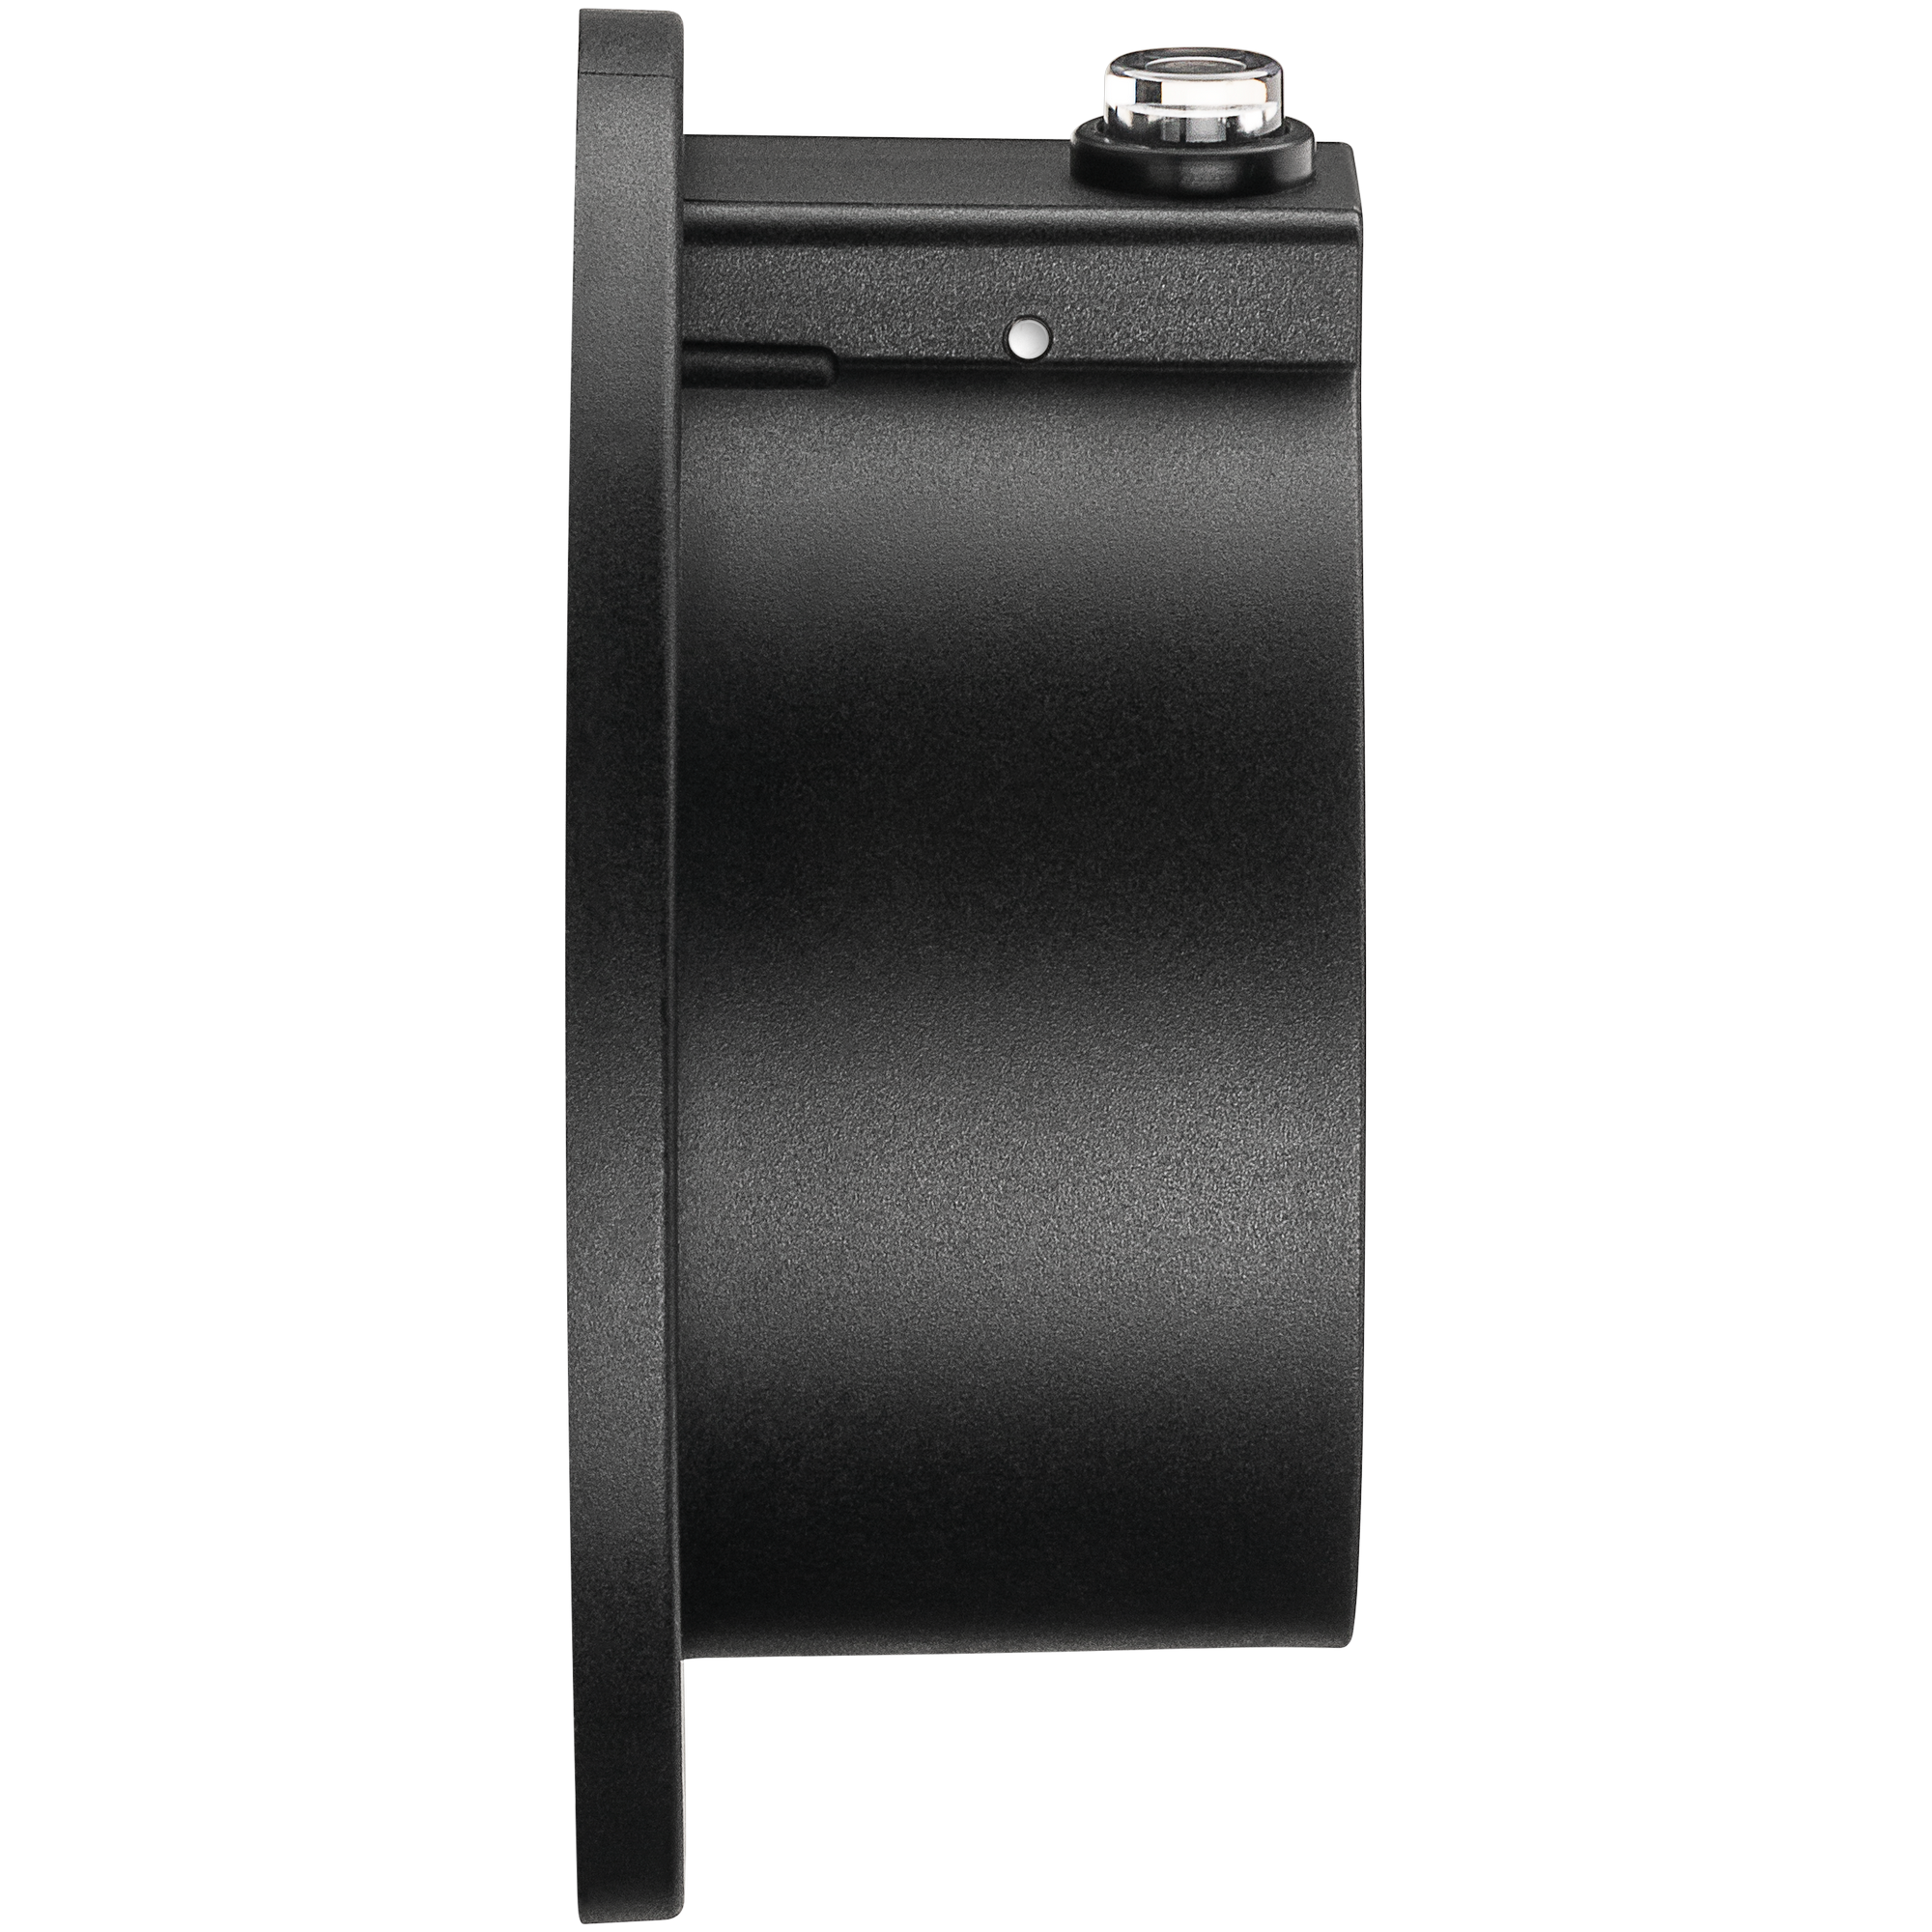 Wandhalterung schwarz für Typ-2-Ladekabel Elektrofahrzeug + product picture